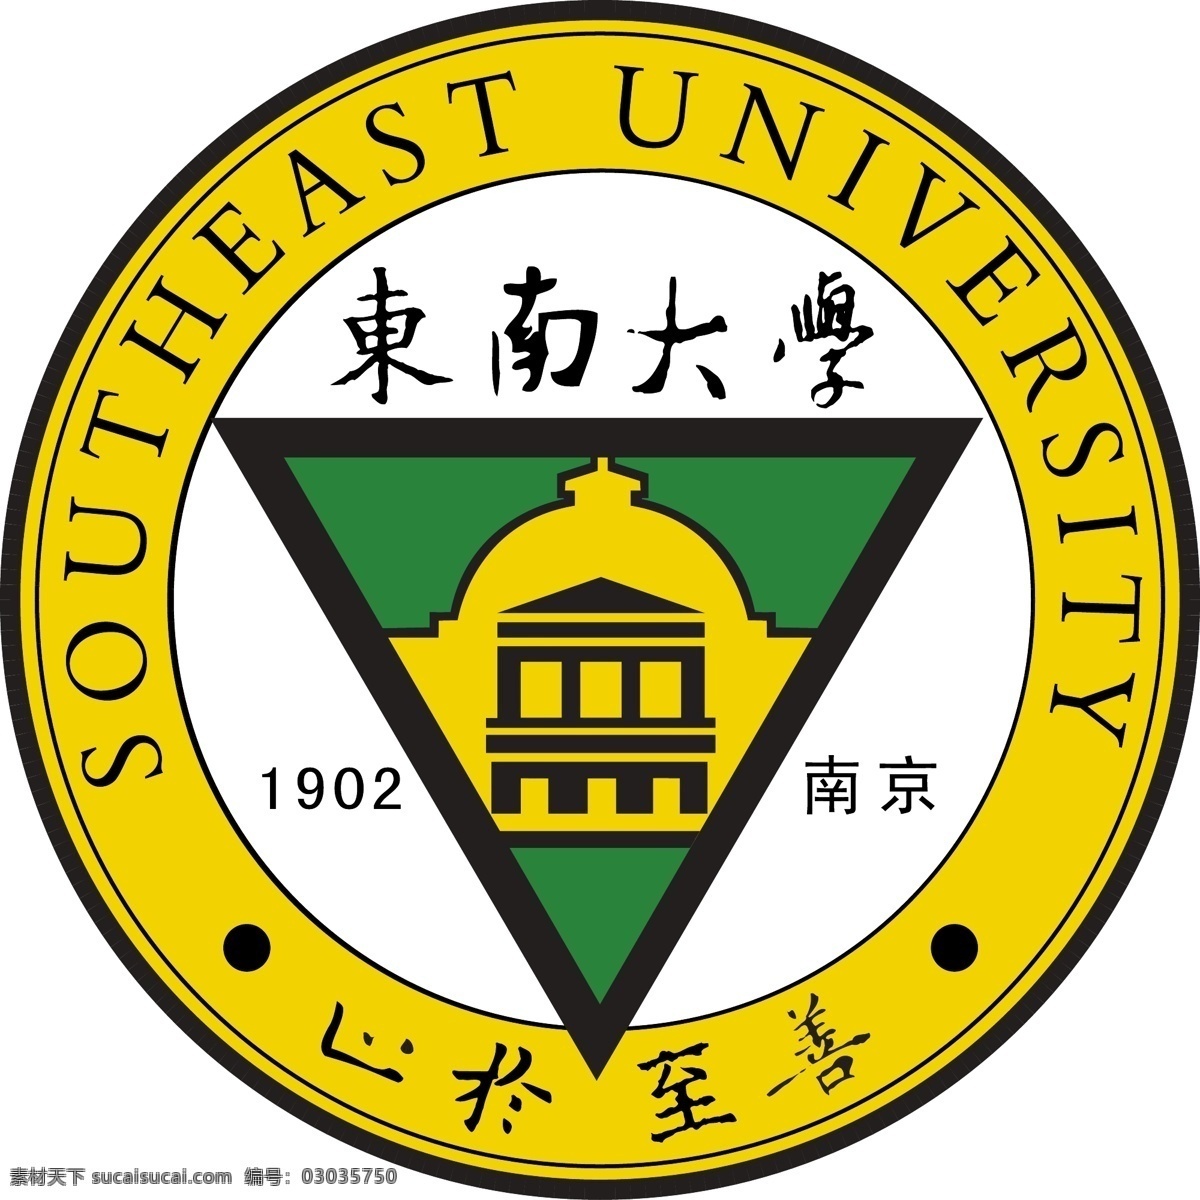 东南大学校徽 校徽 东南大学 logo 企业 标志 标识标志图标 矢量